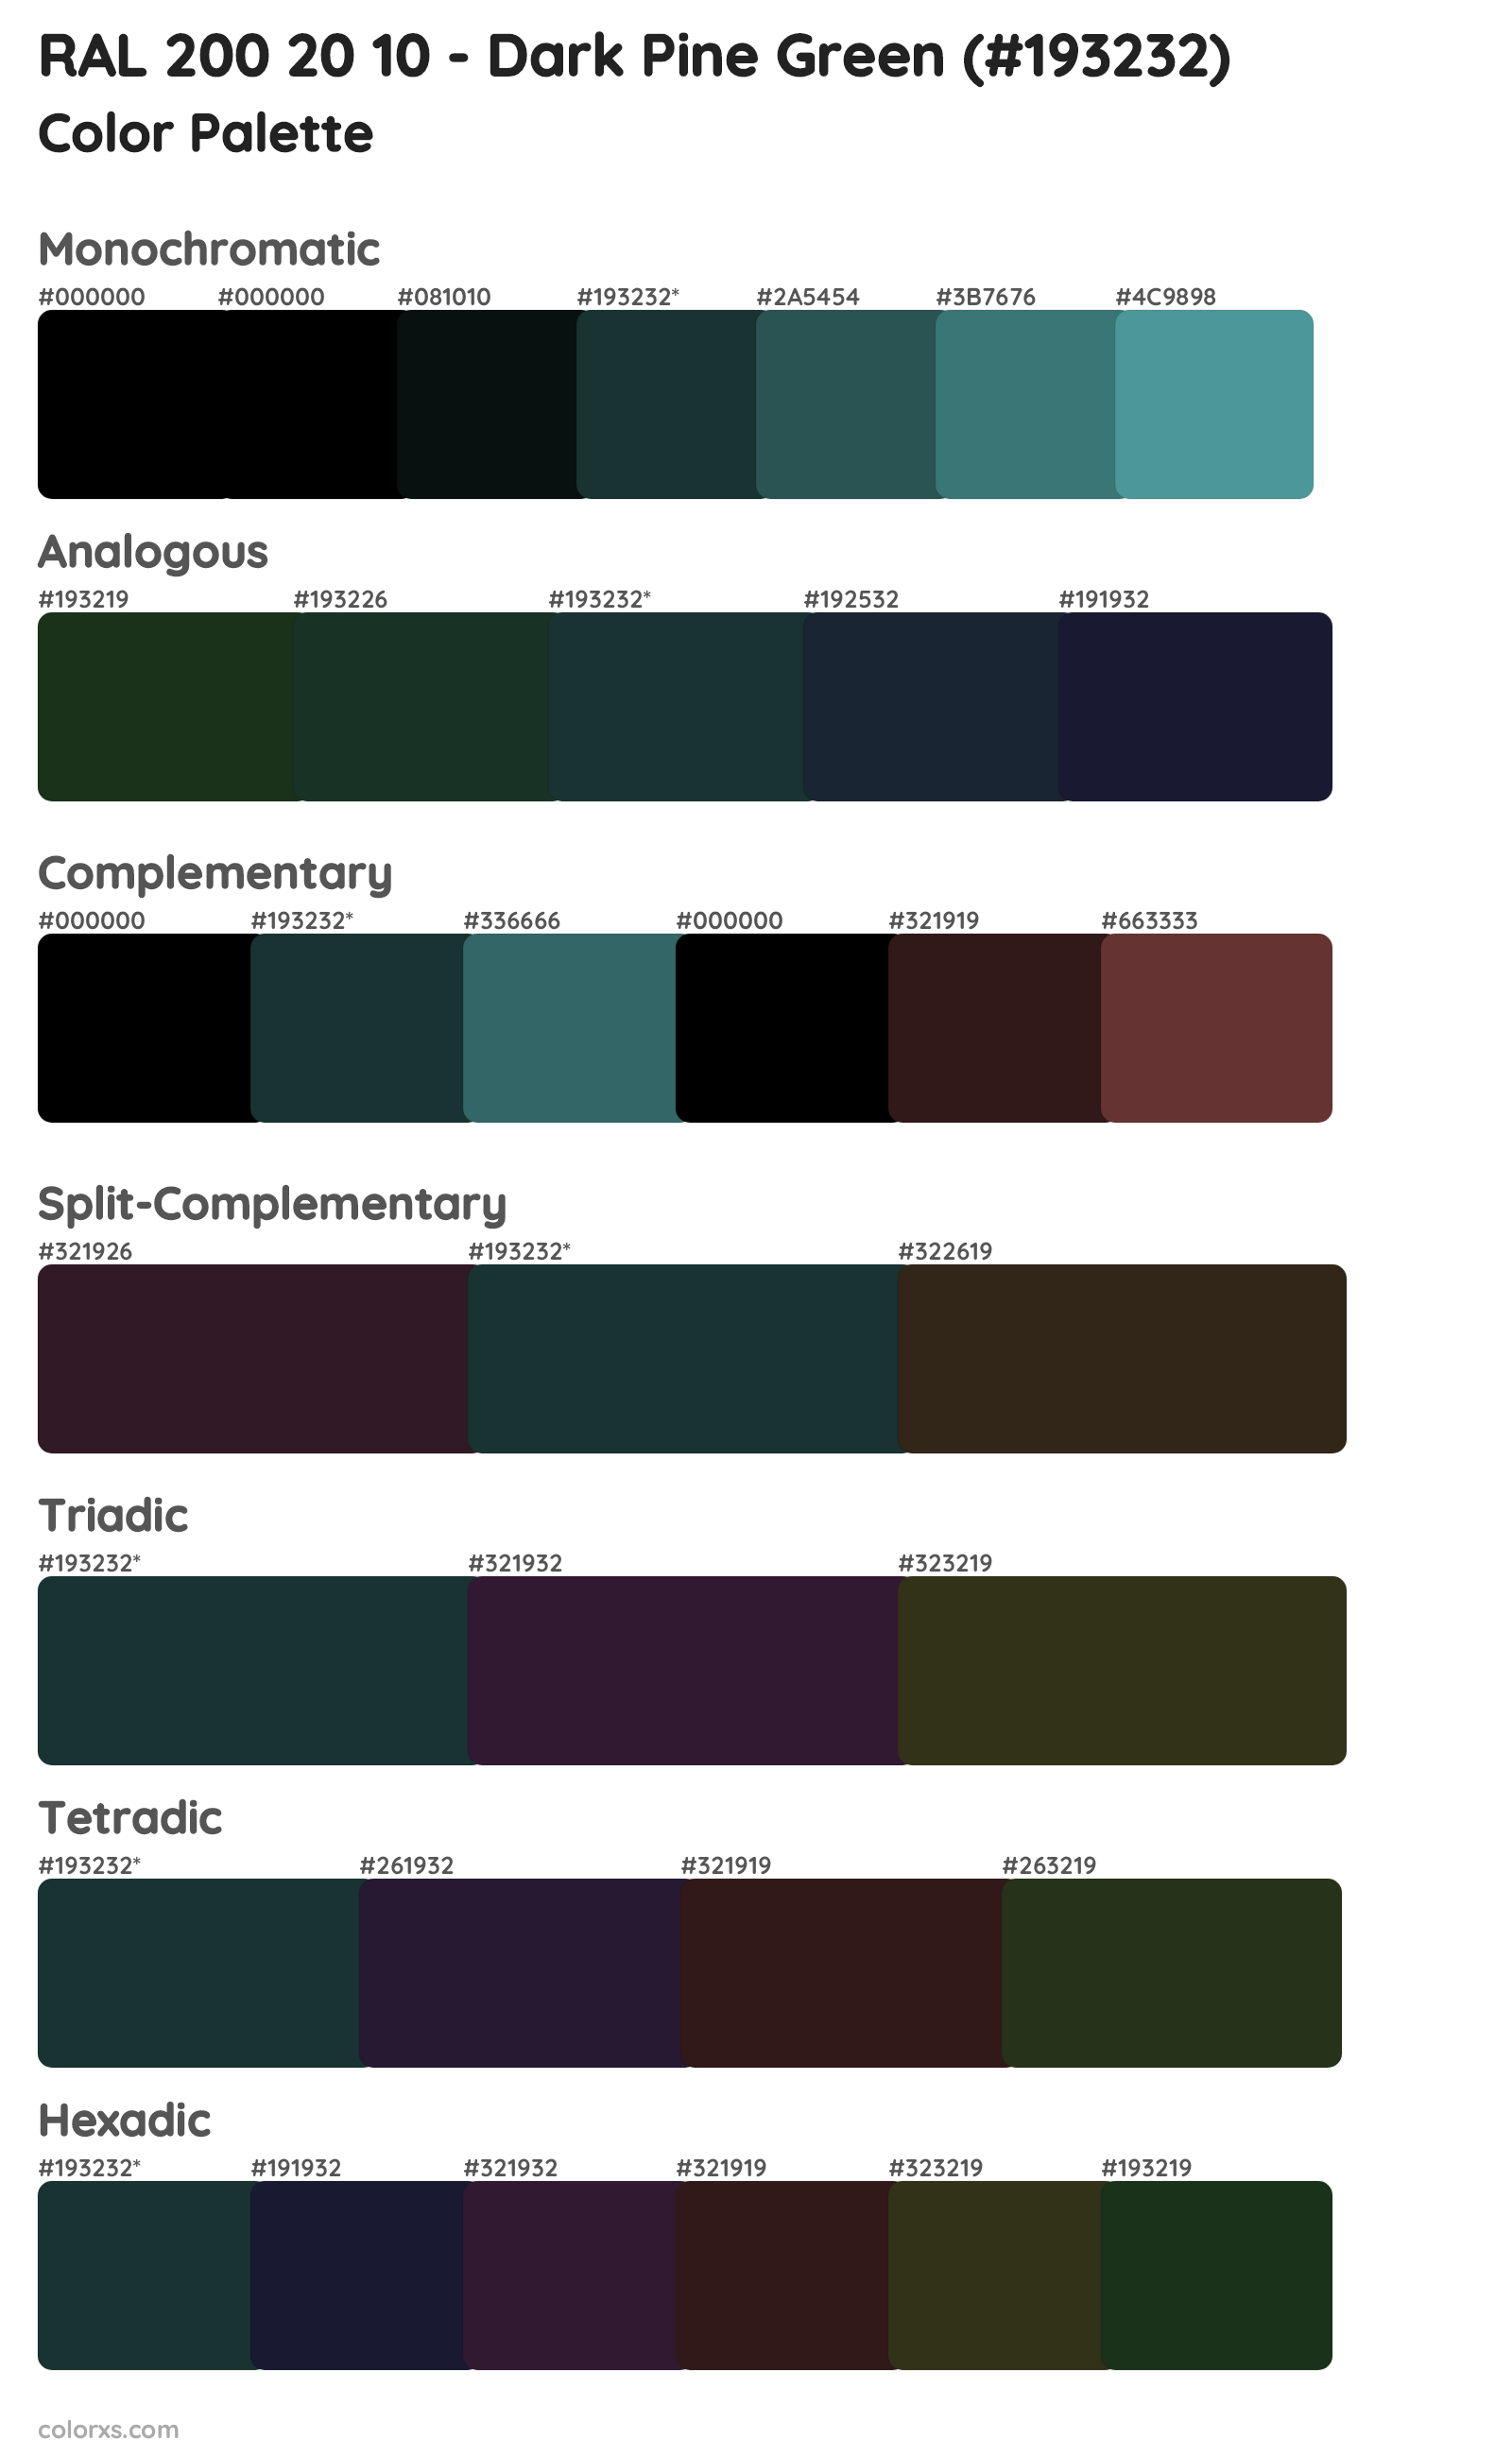 RAL 200 20 10 - Dark Pine Green Color Scheme Palettes